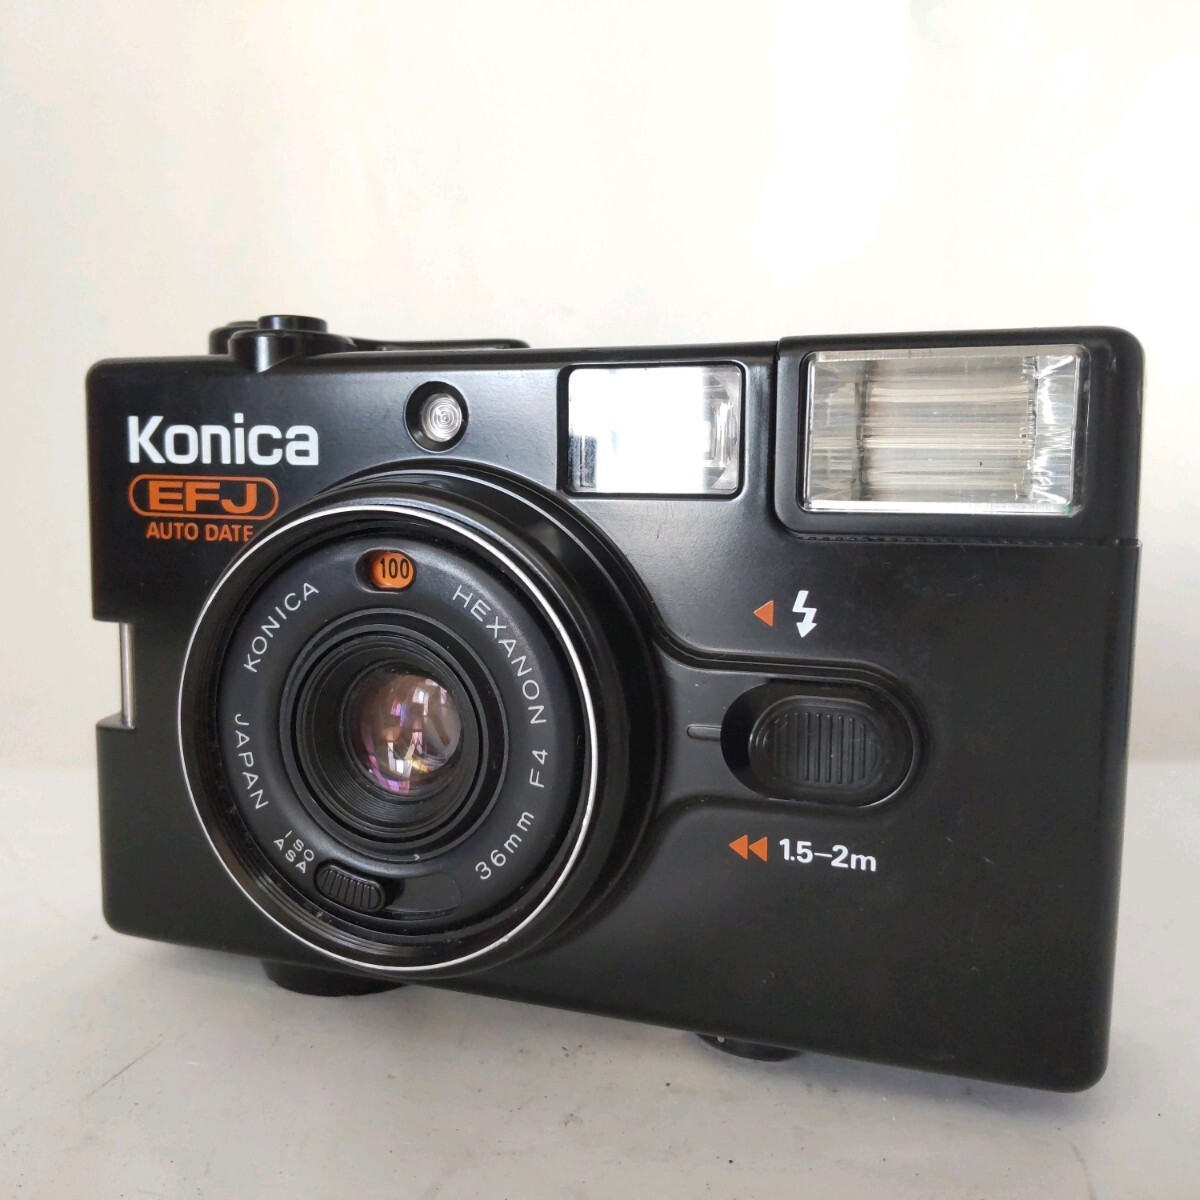 ★良品★ KONICA コニカ EFJ AUTO DATE コンパクトフィルムカメラ #197_画像1